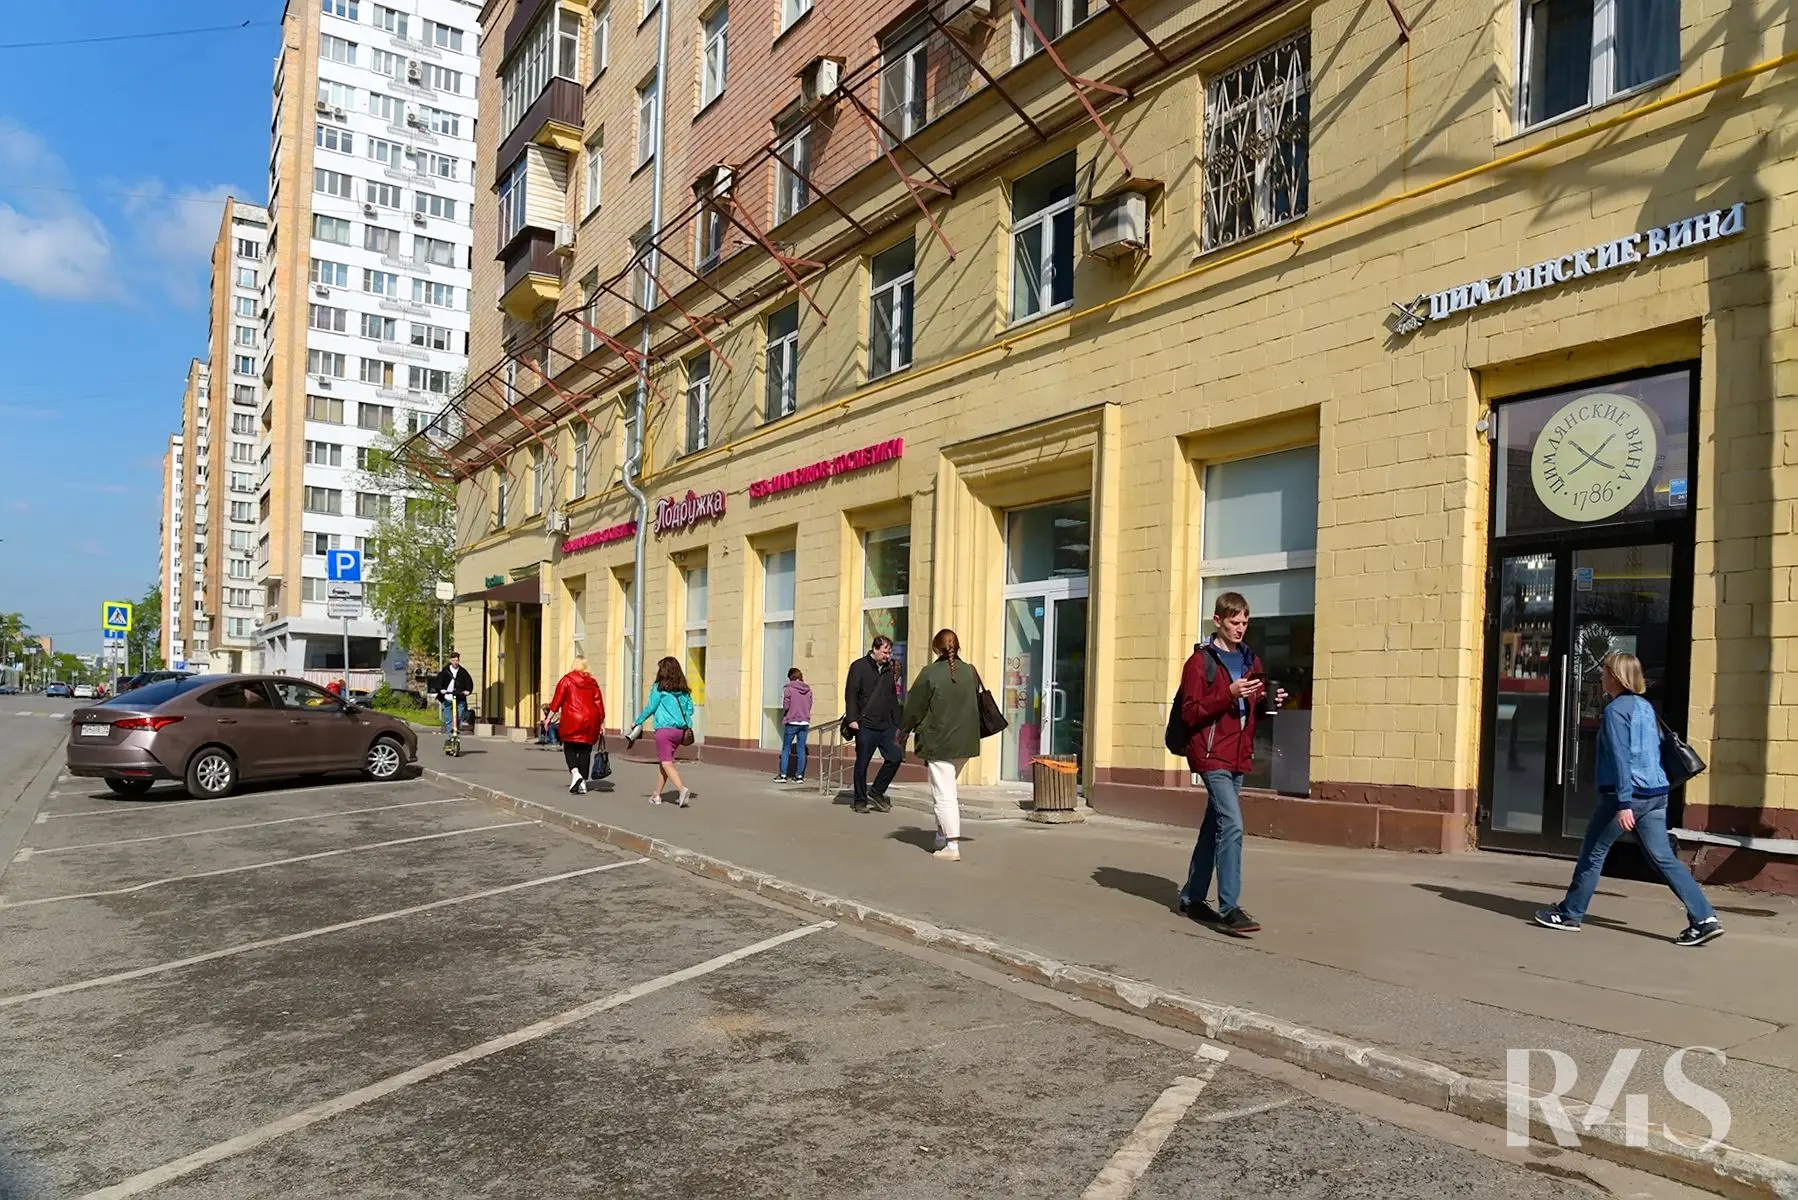 Продажа готового арендного бизнеса площадью 180 м2 в Москве: Щербаковская, 35 R4S | Realty4Sale